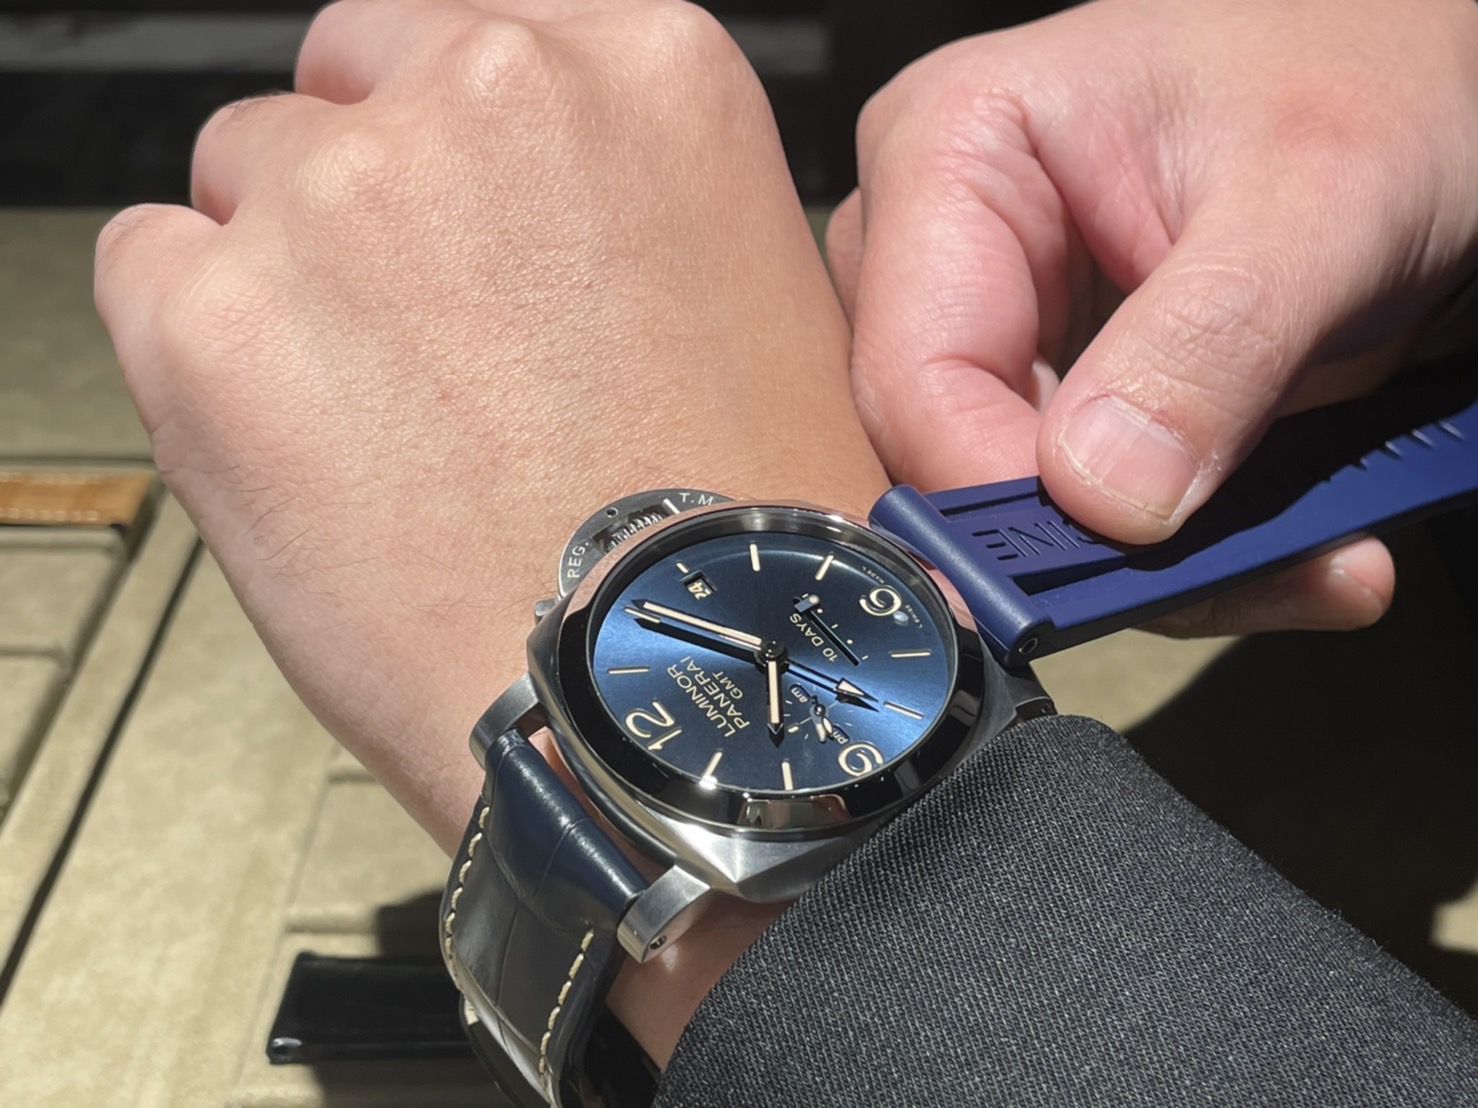 ルミノール GMT 10デイズ Ref.PAM00986 品 メンズ 腕時計